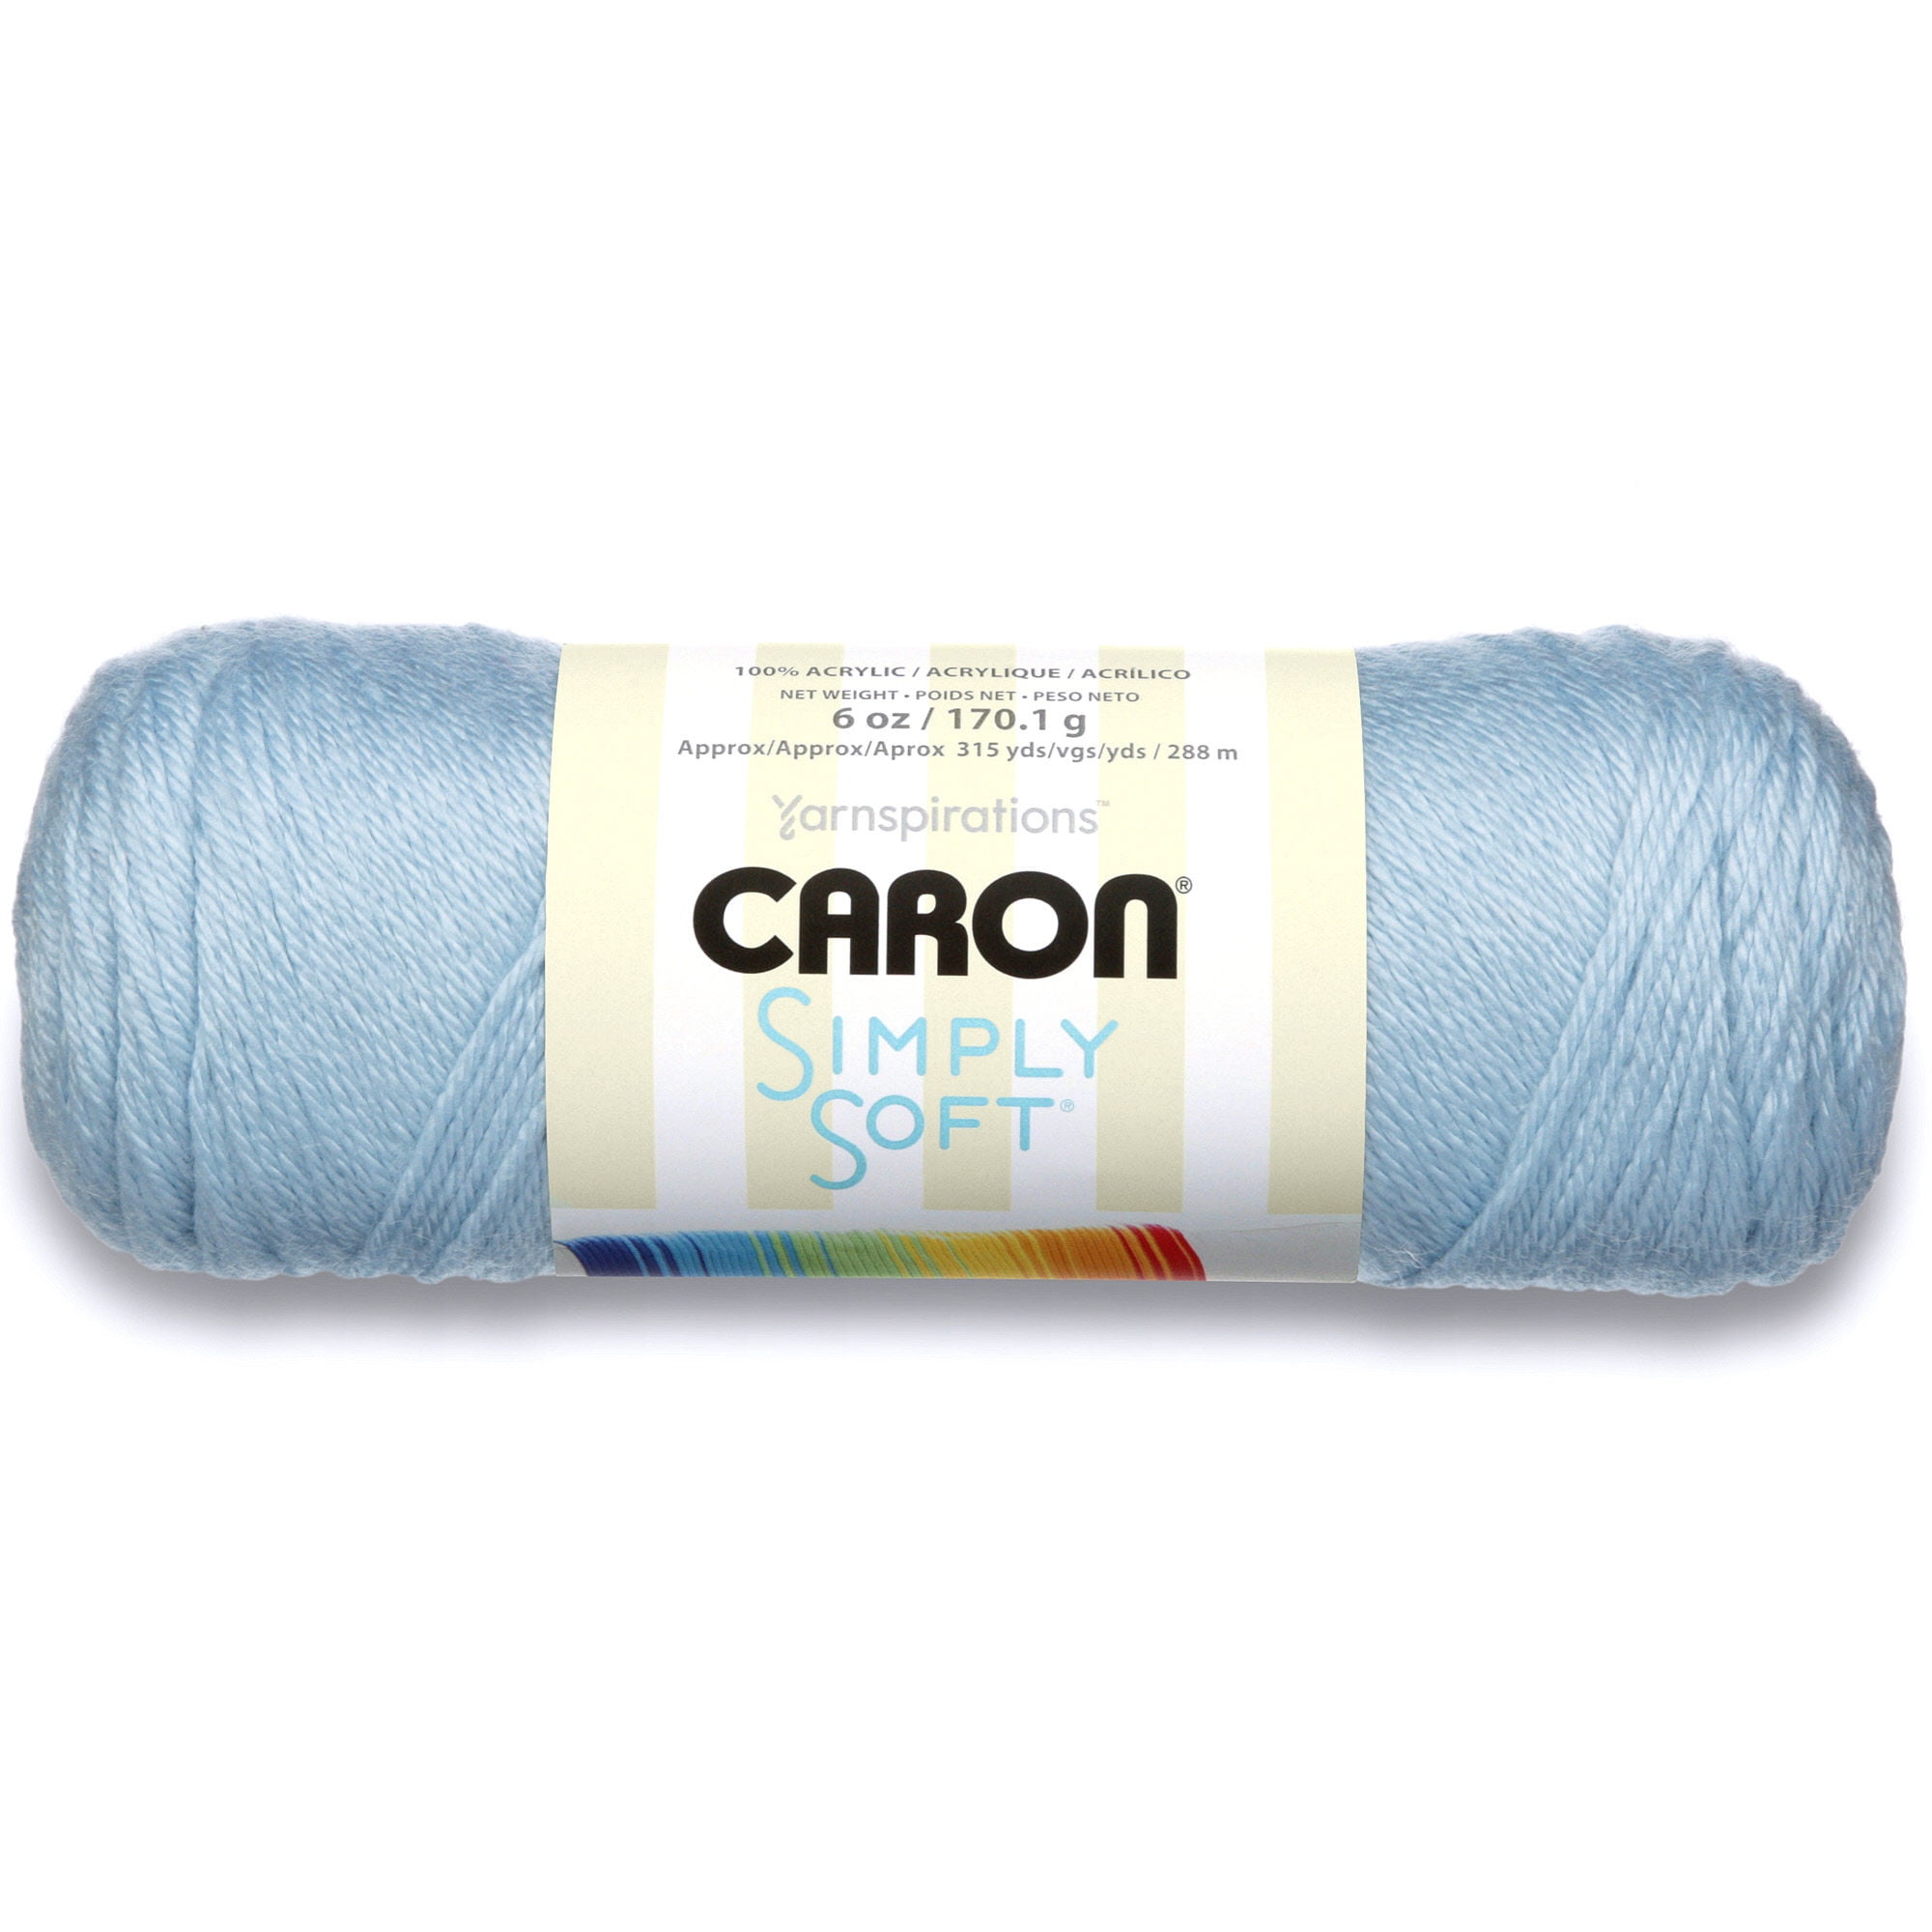 Caron Simply Soft Pack de 4 pelotes 170g chaque pelote Bleu foncé 